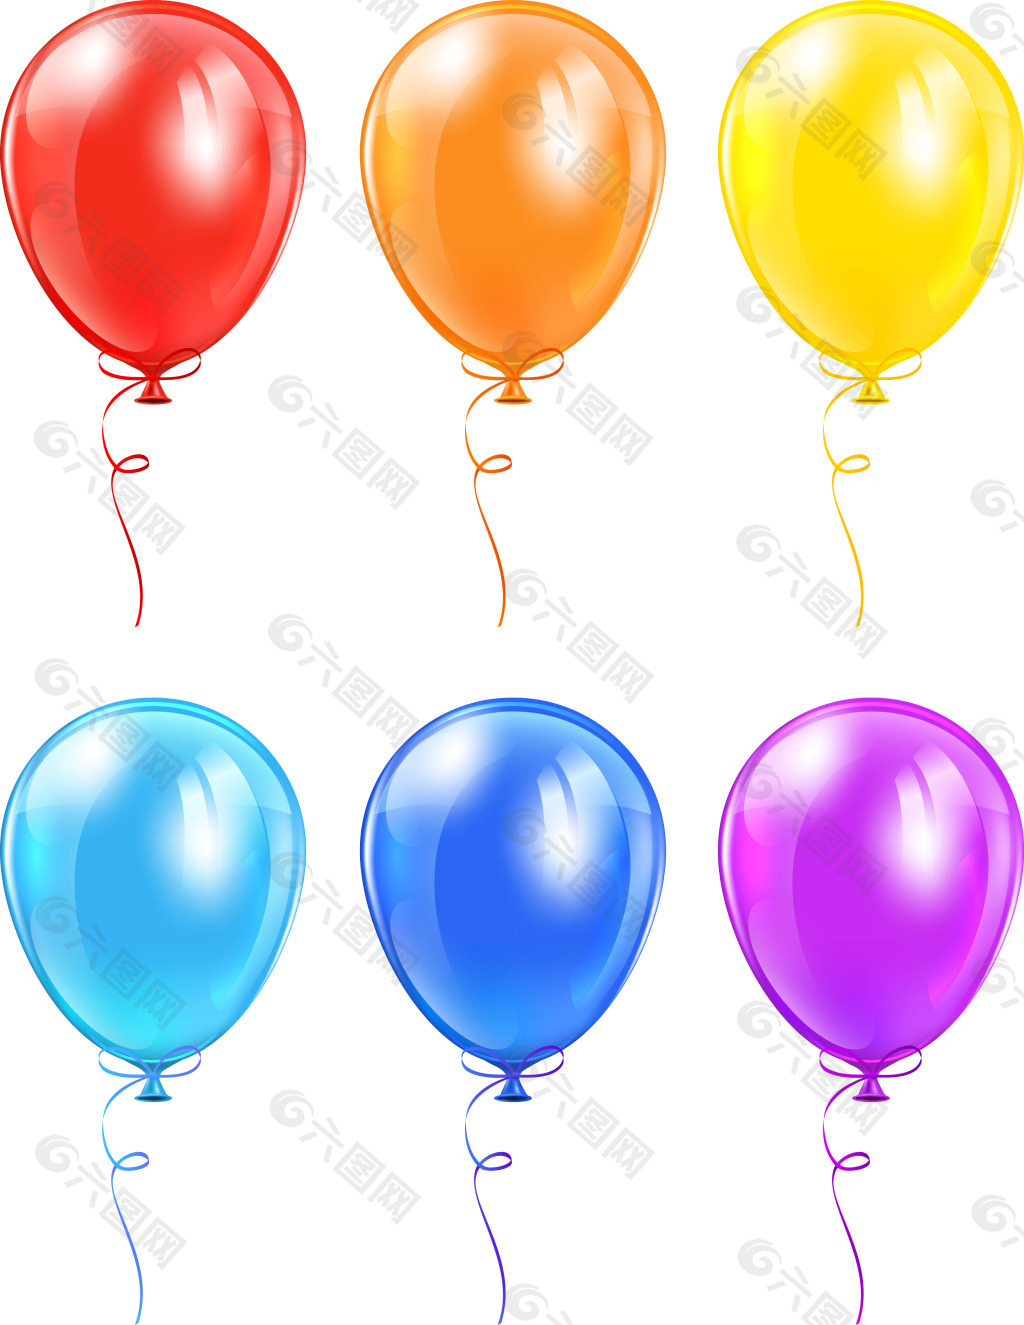 彩色气球素材